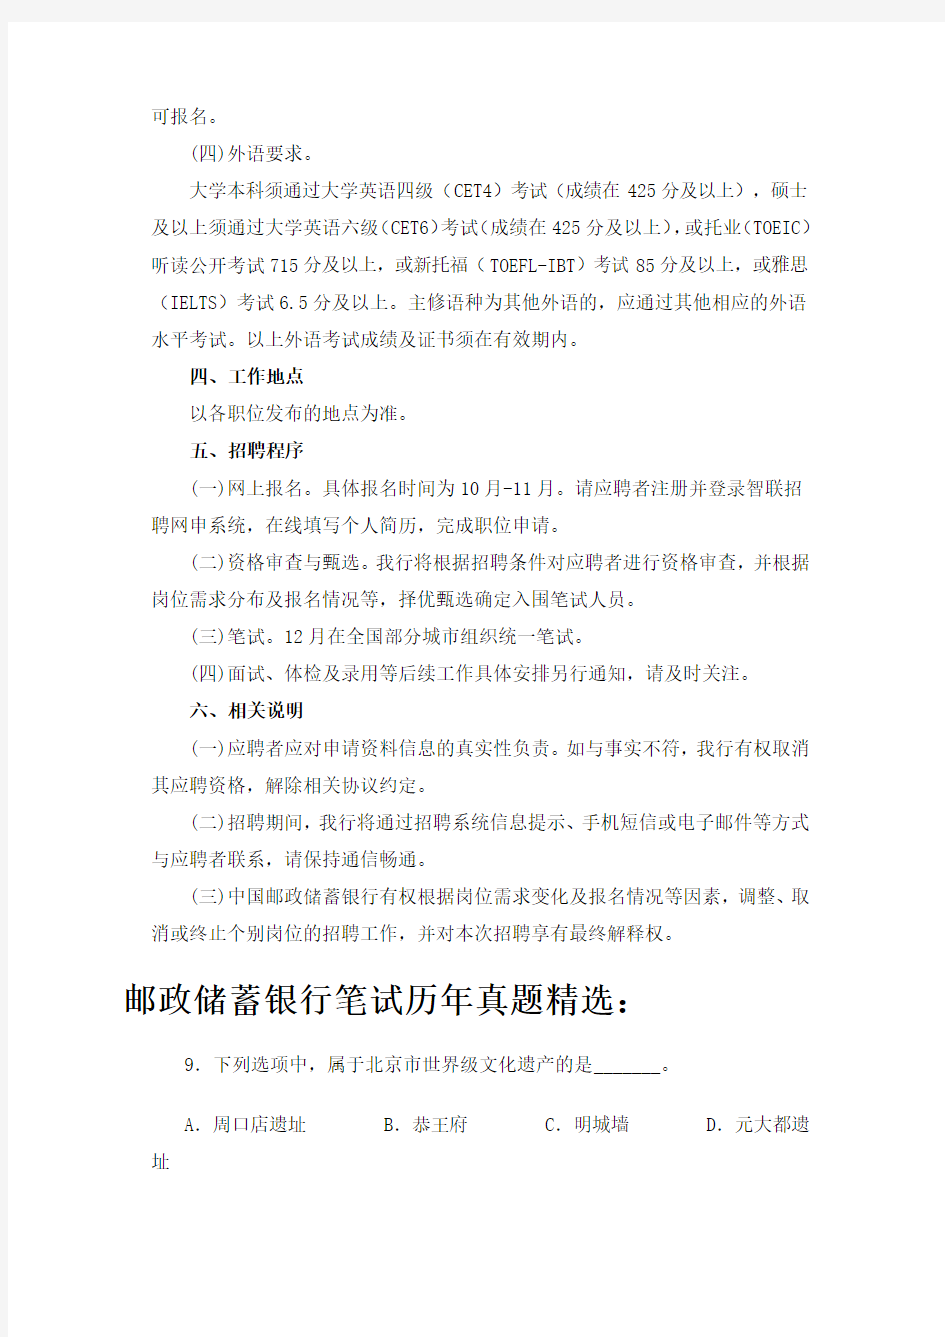 中国邮政储蓄银行校园招聘考试笔试机考题内容试卷历年考试真题库